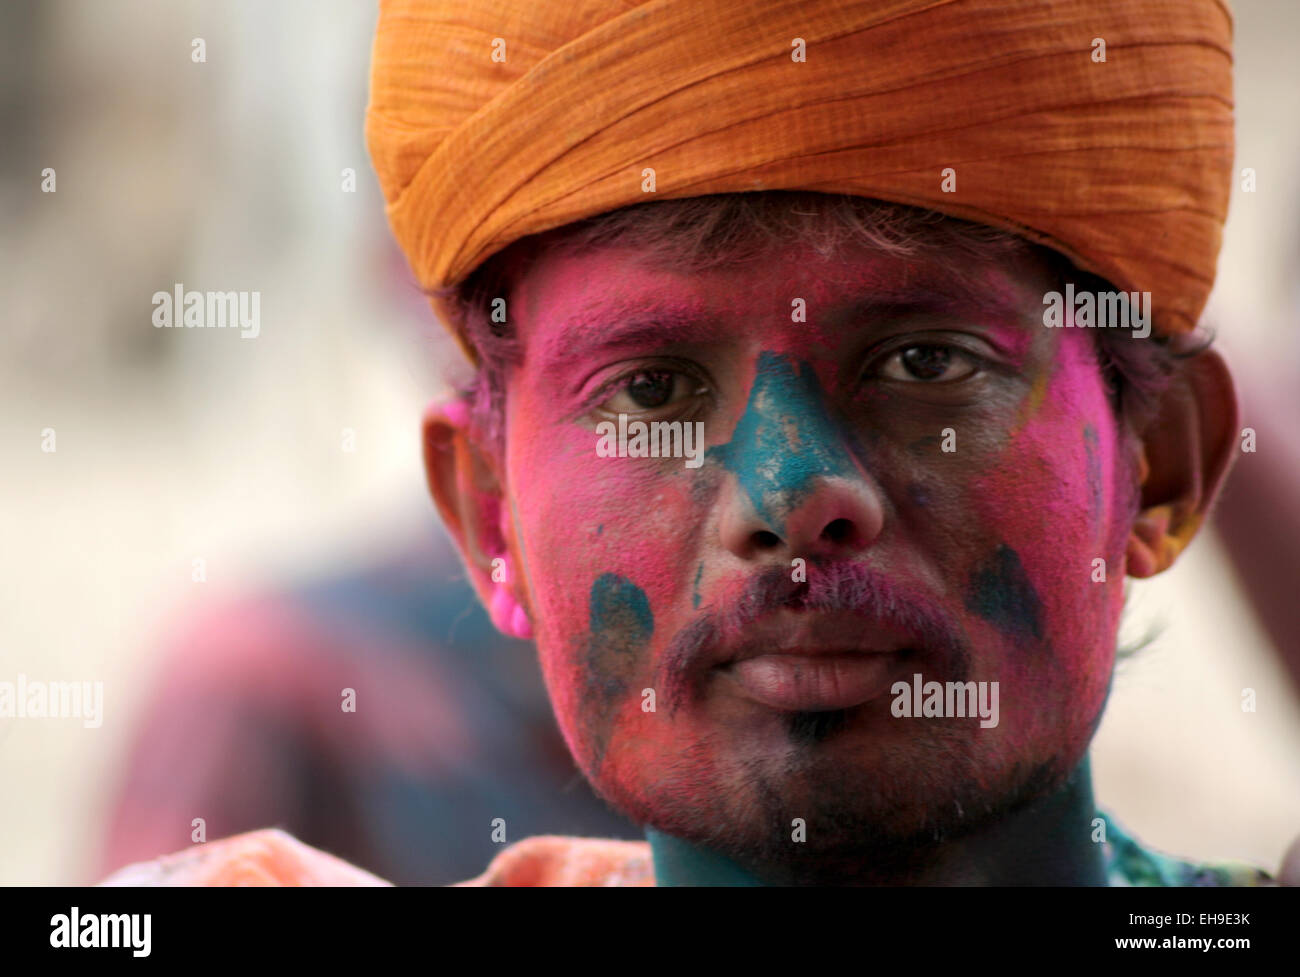 Indisch-hinduistischen feiern Holi Festival der Farben, annual Festival im März 6,2015 Hyderabad,India.Popular Festival für Hindus. Stockfoto